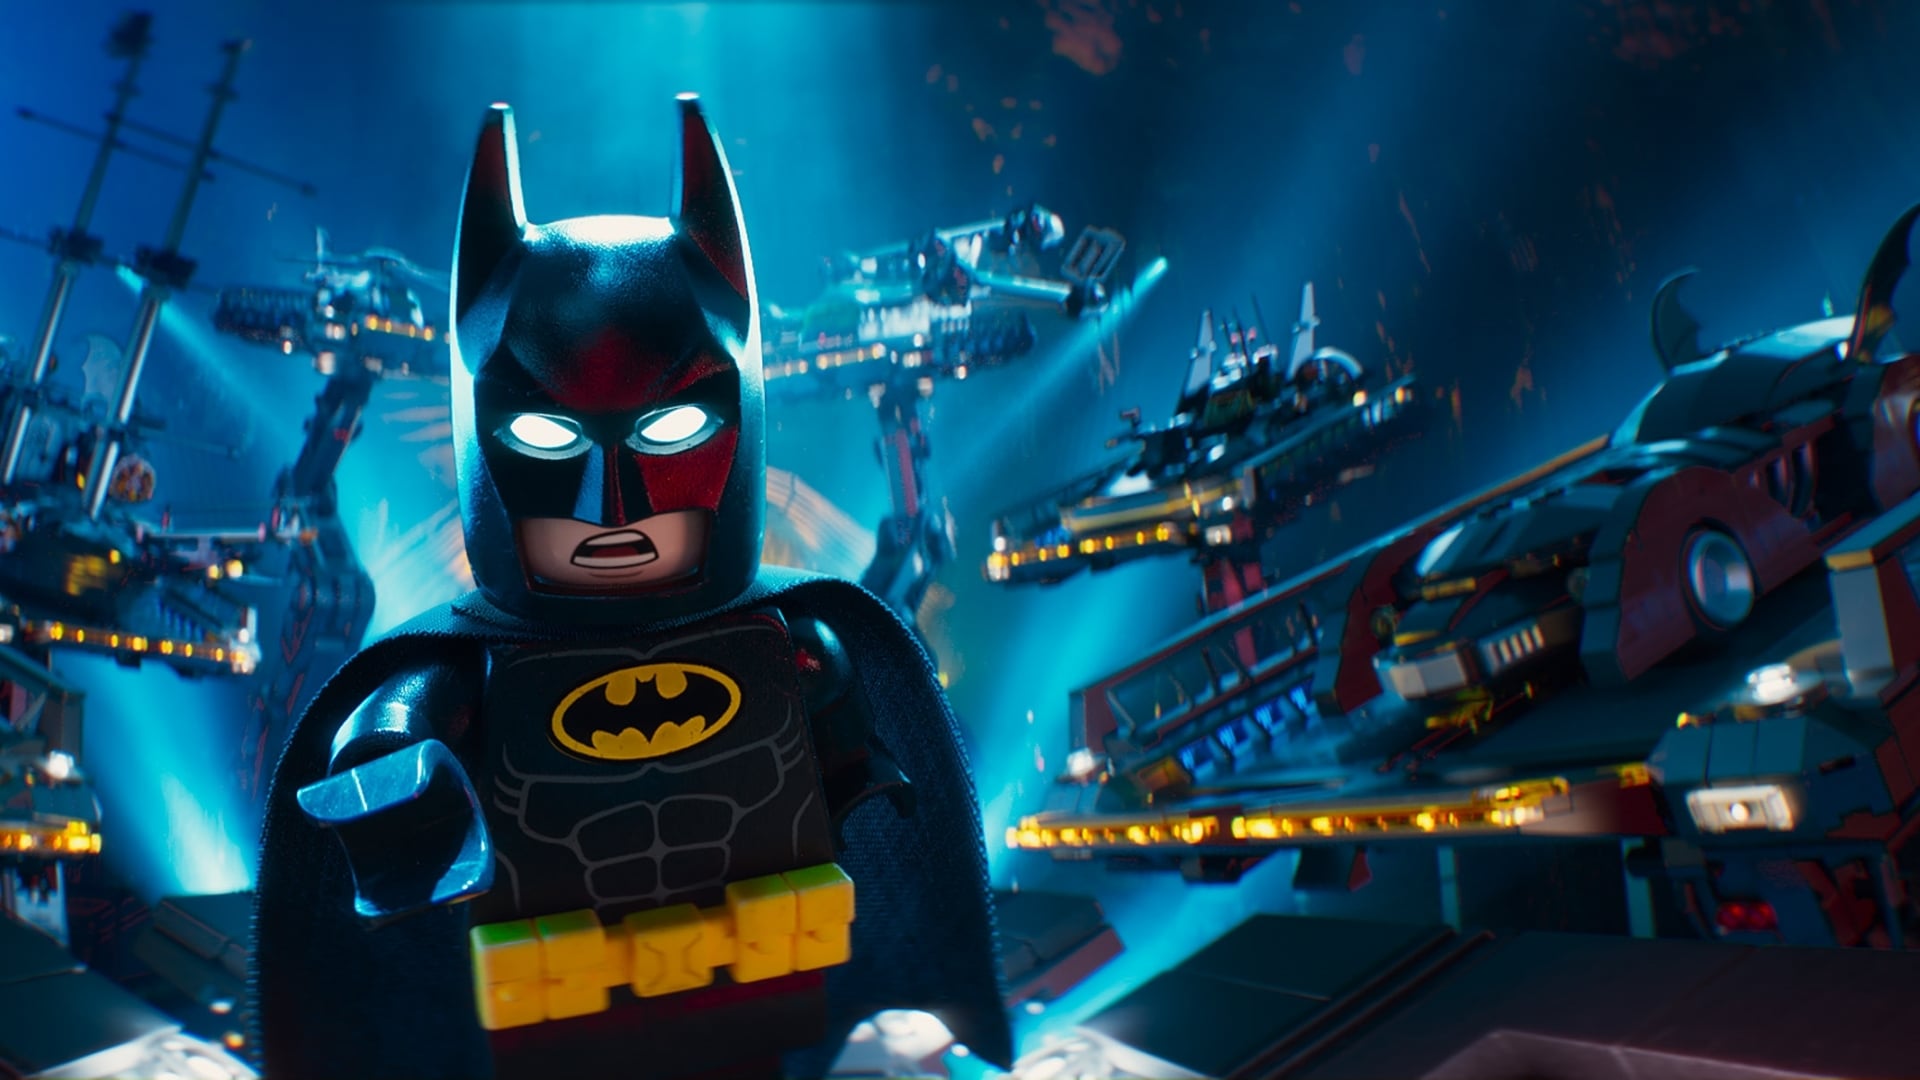 Lego Batman - A film (2017)